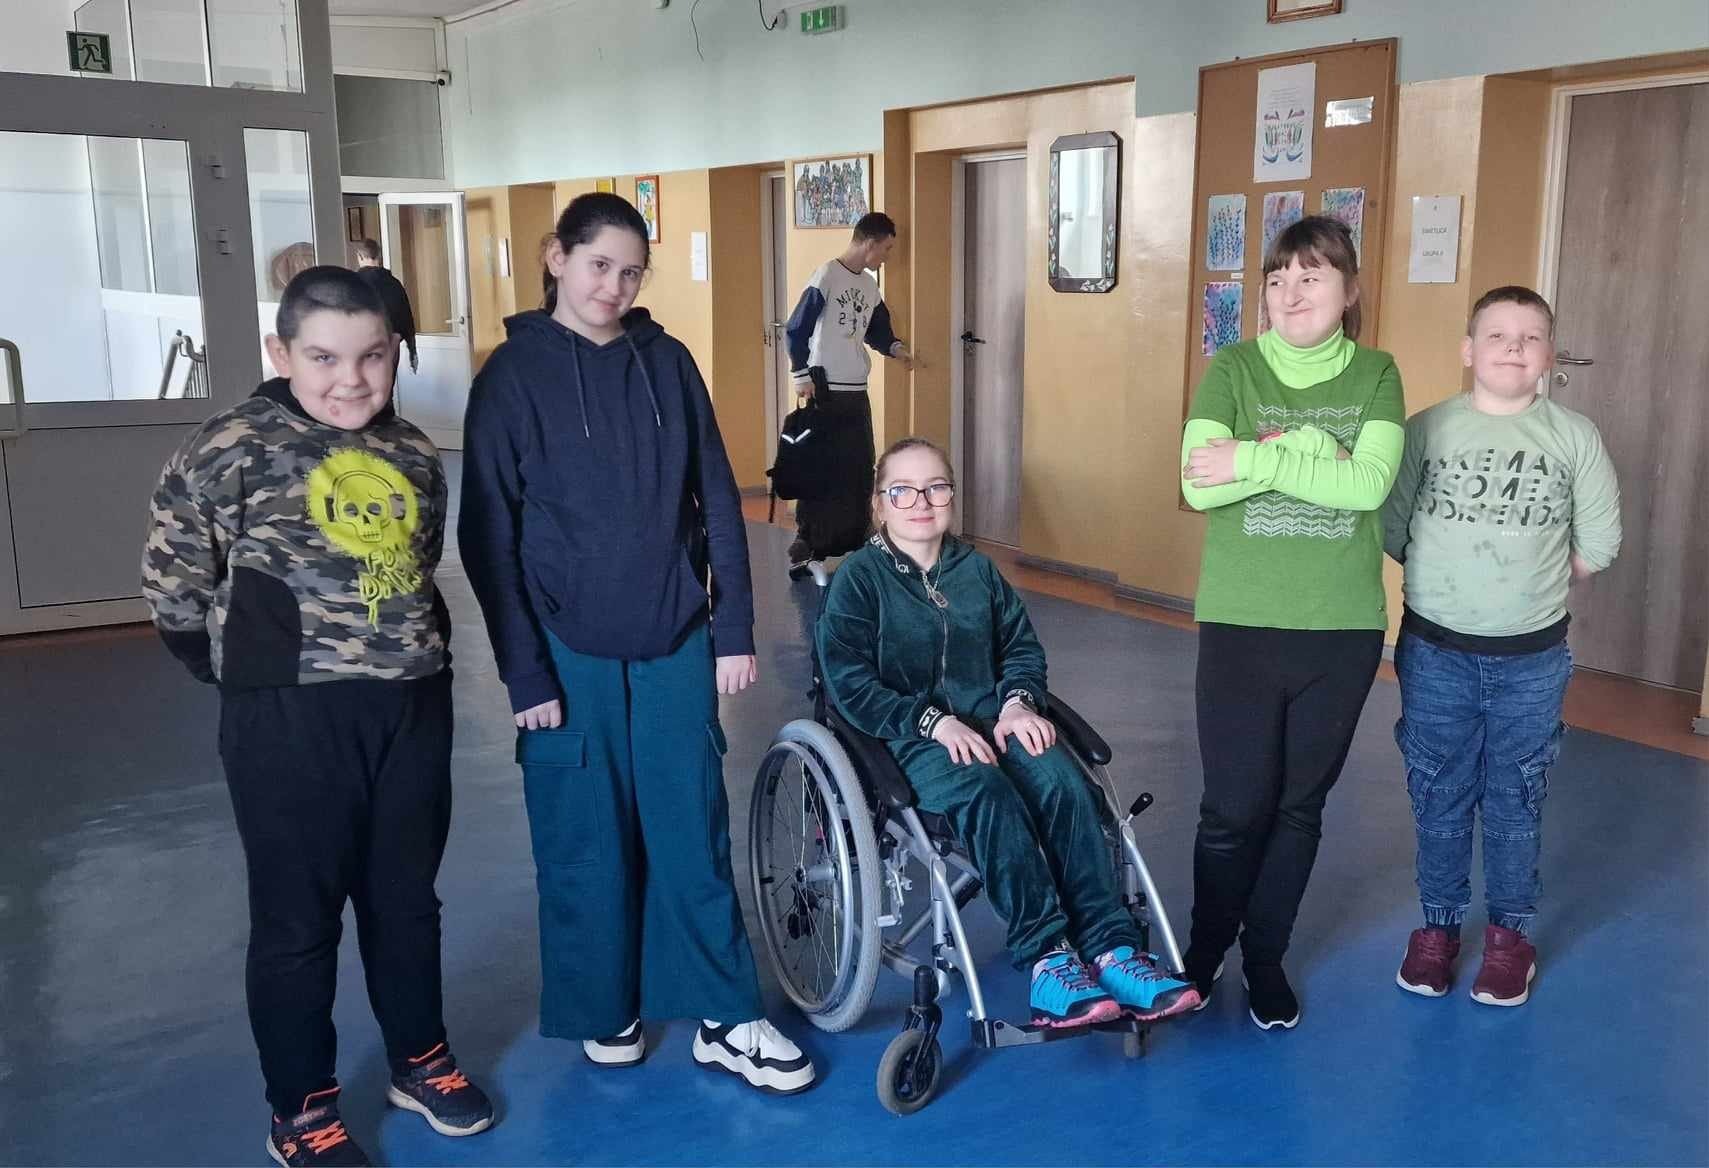 5 uczniów, w tym 1 na wózku inwalidzkim pozuje do zdjęcia - mają zielone dodatki w ubiorze